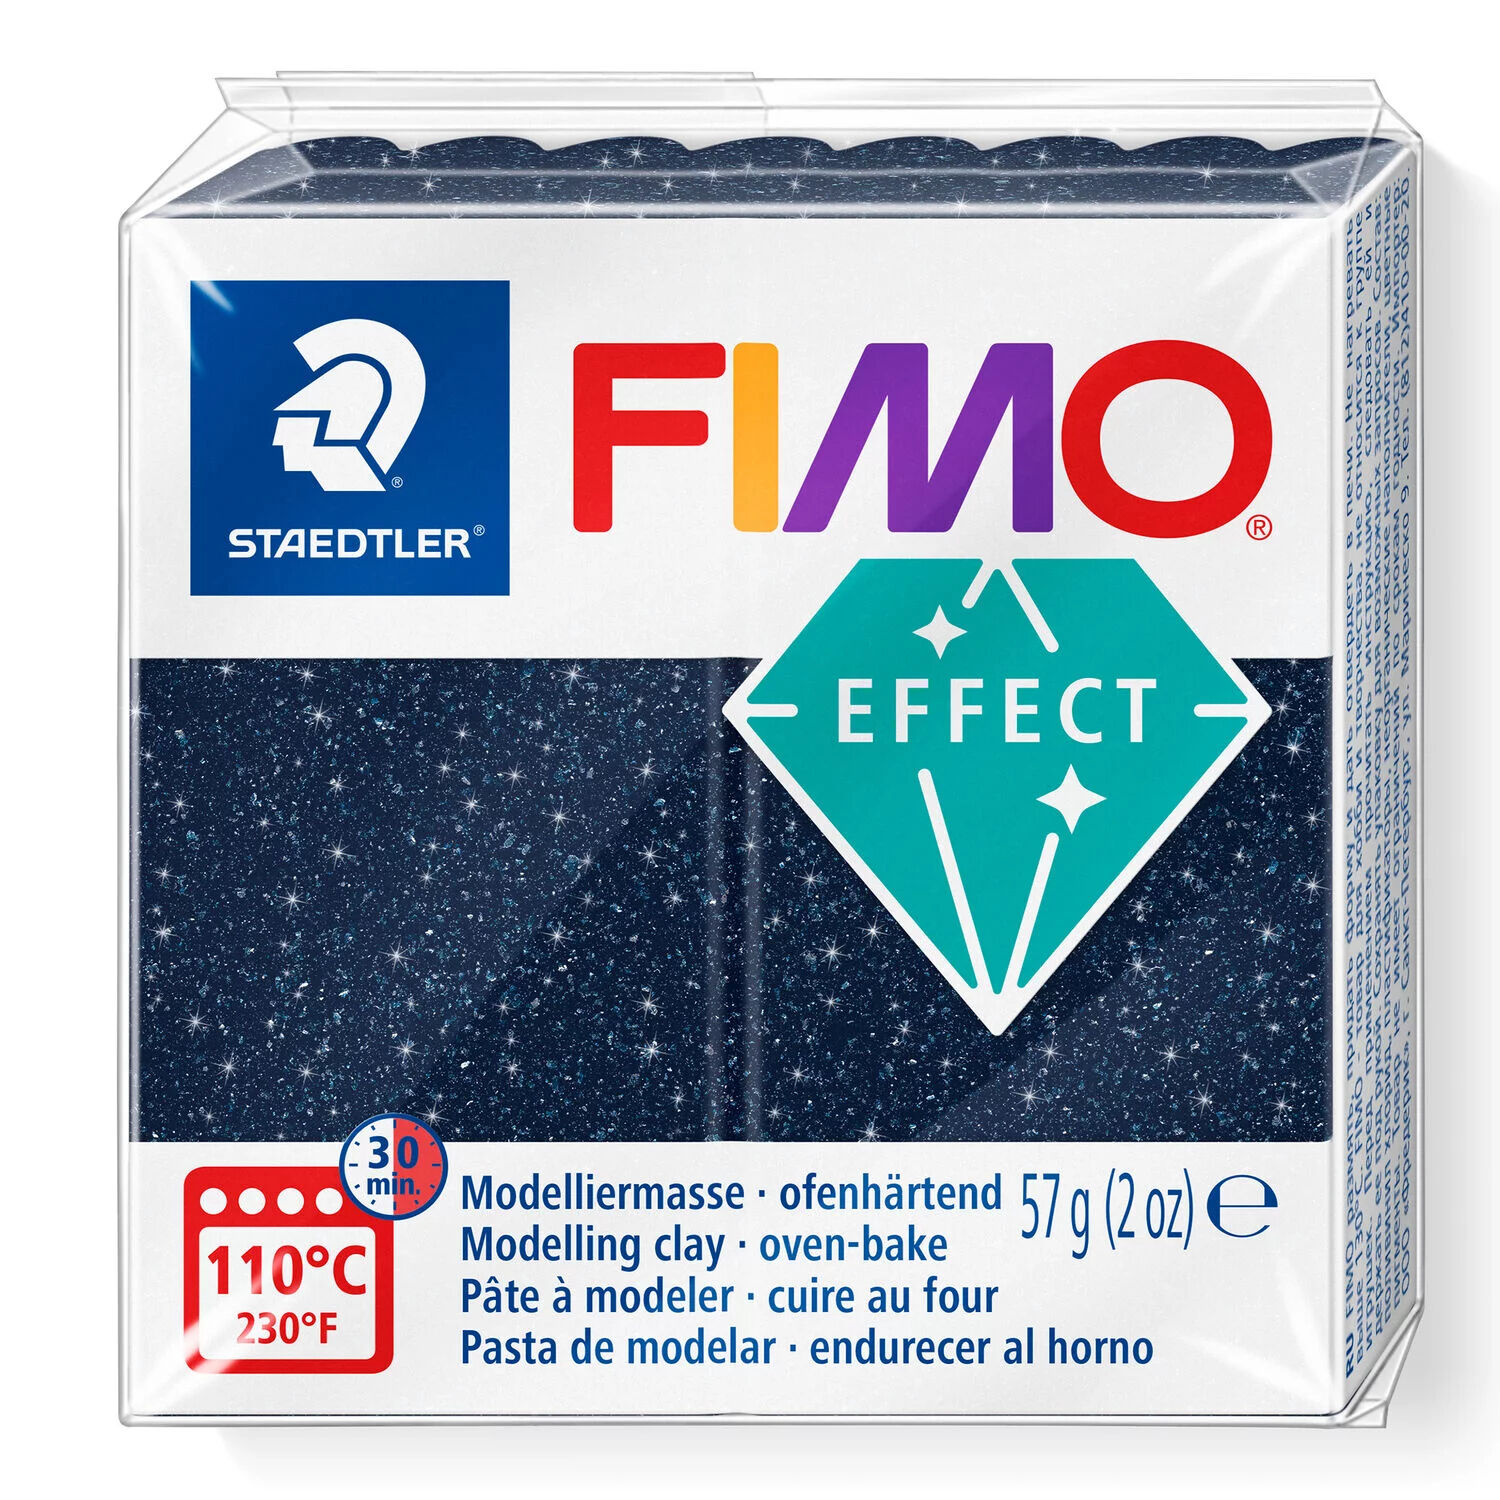 NEU Fimo Effect 57g, Galaxy-Blau